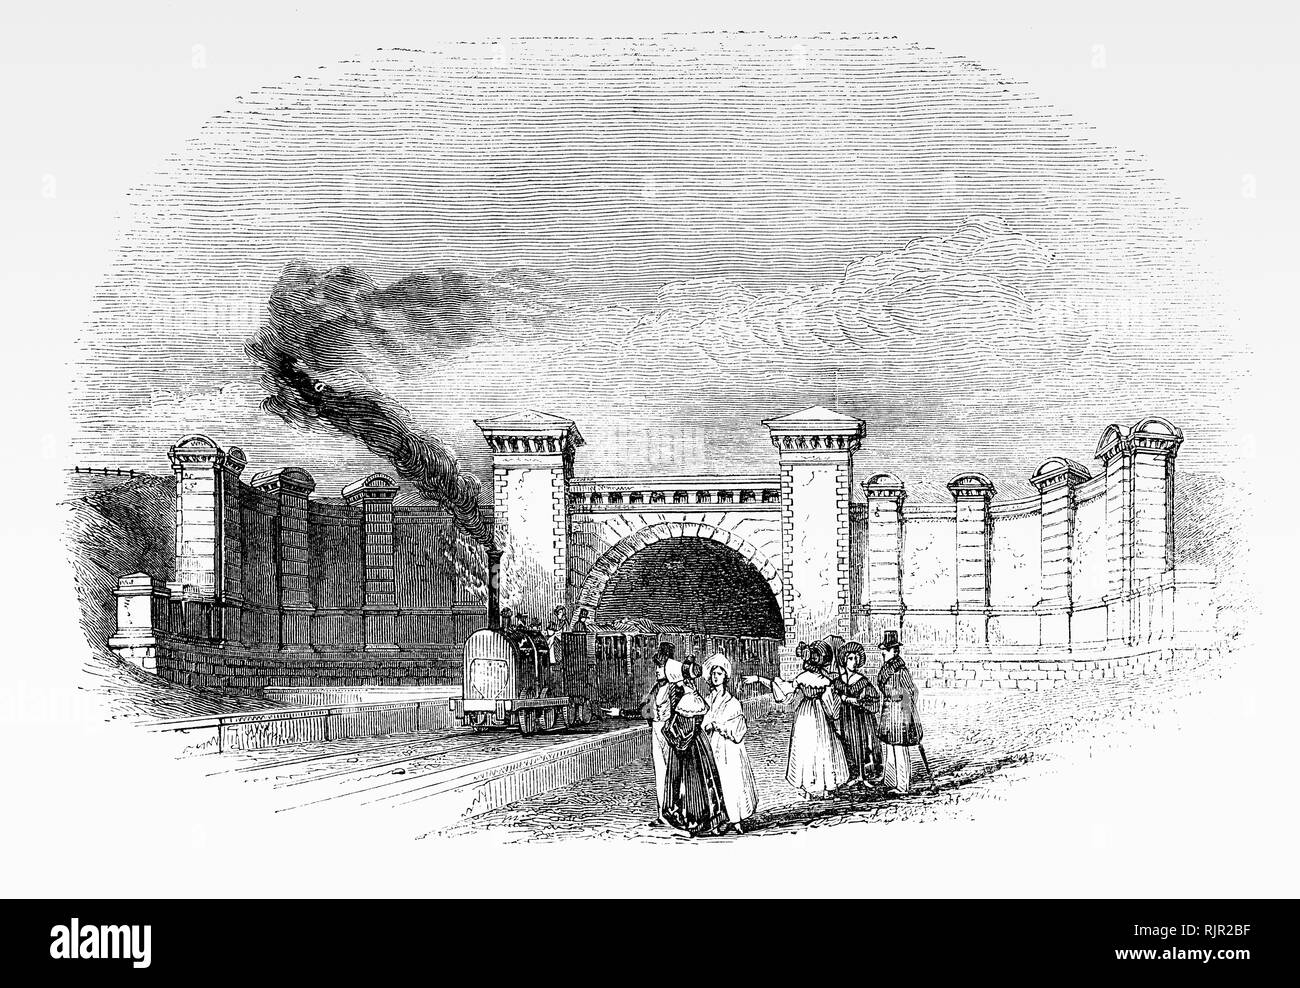 La galleria ferroviaria a Primrose Hill vicino alla stazione ferroviaria, al London Borough of Camden, Londra, Inghilterra. Esso è stato inaugurato il 5 maggio 1855 come parte della prima stazione ferroviaria intercity tra Londra e Birmingham (L&BR) pianificato da George e Robert Stephenson. Foto Stock